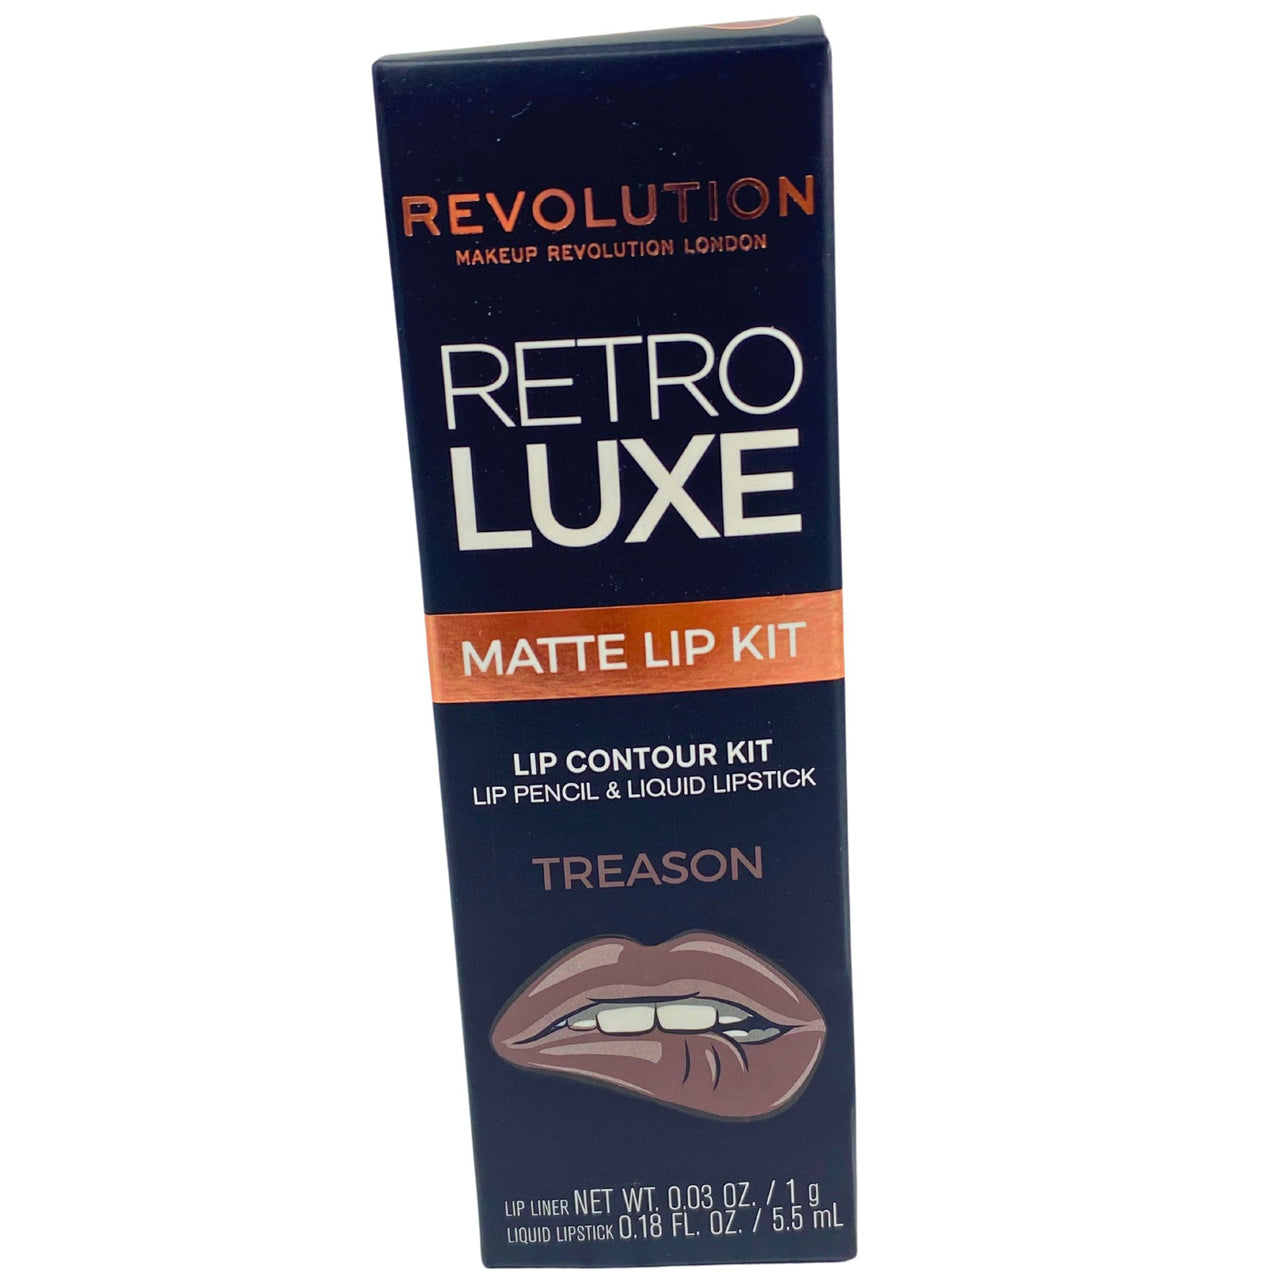 Revolution Retro Luxe Matte Lip Kit Lip Contour Kit Lip Pencil & Liquid Lipstick TREASON